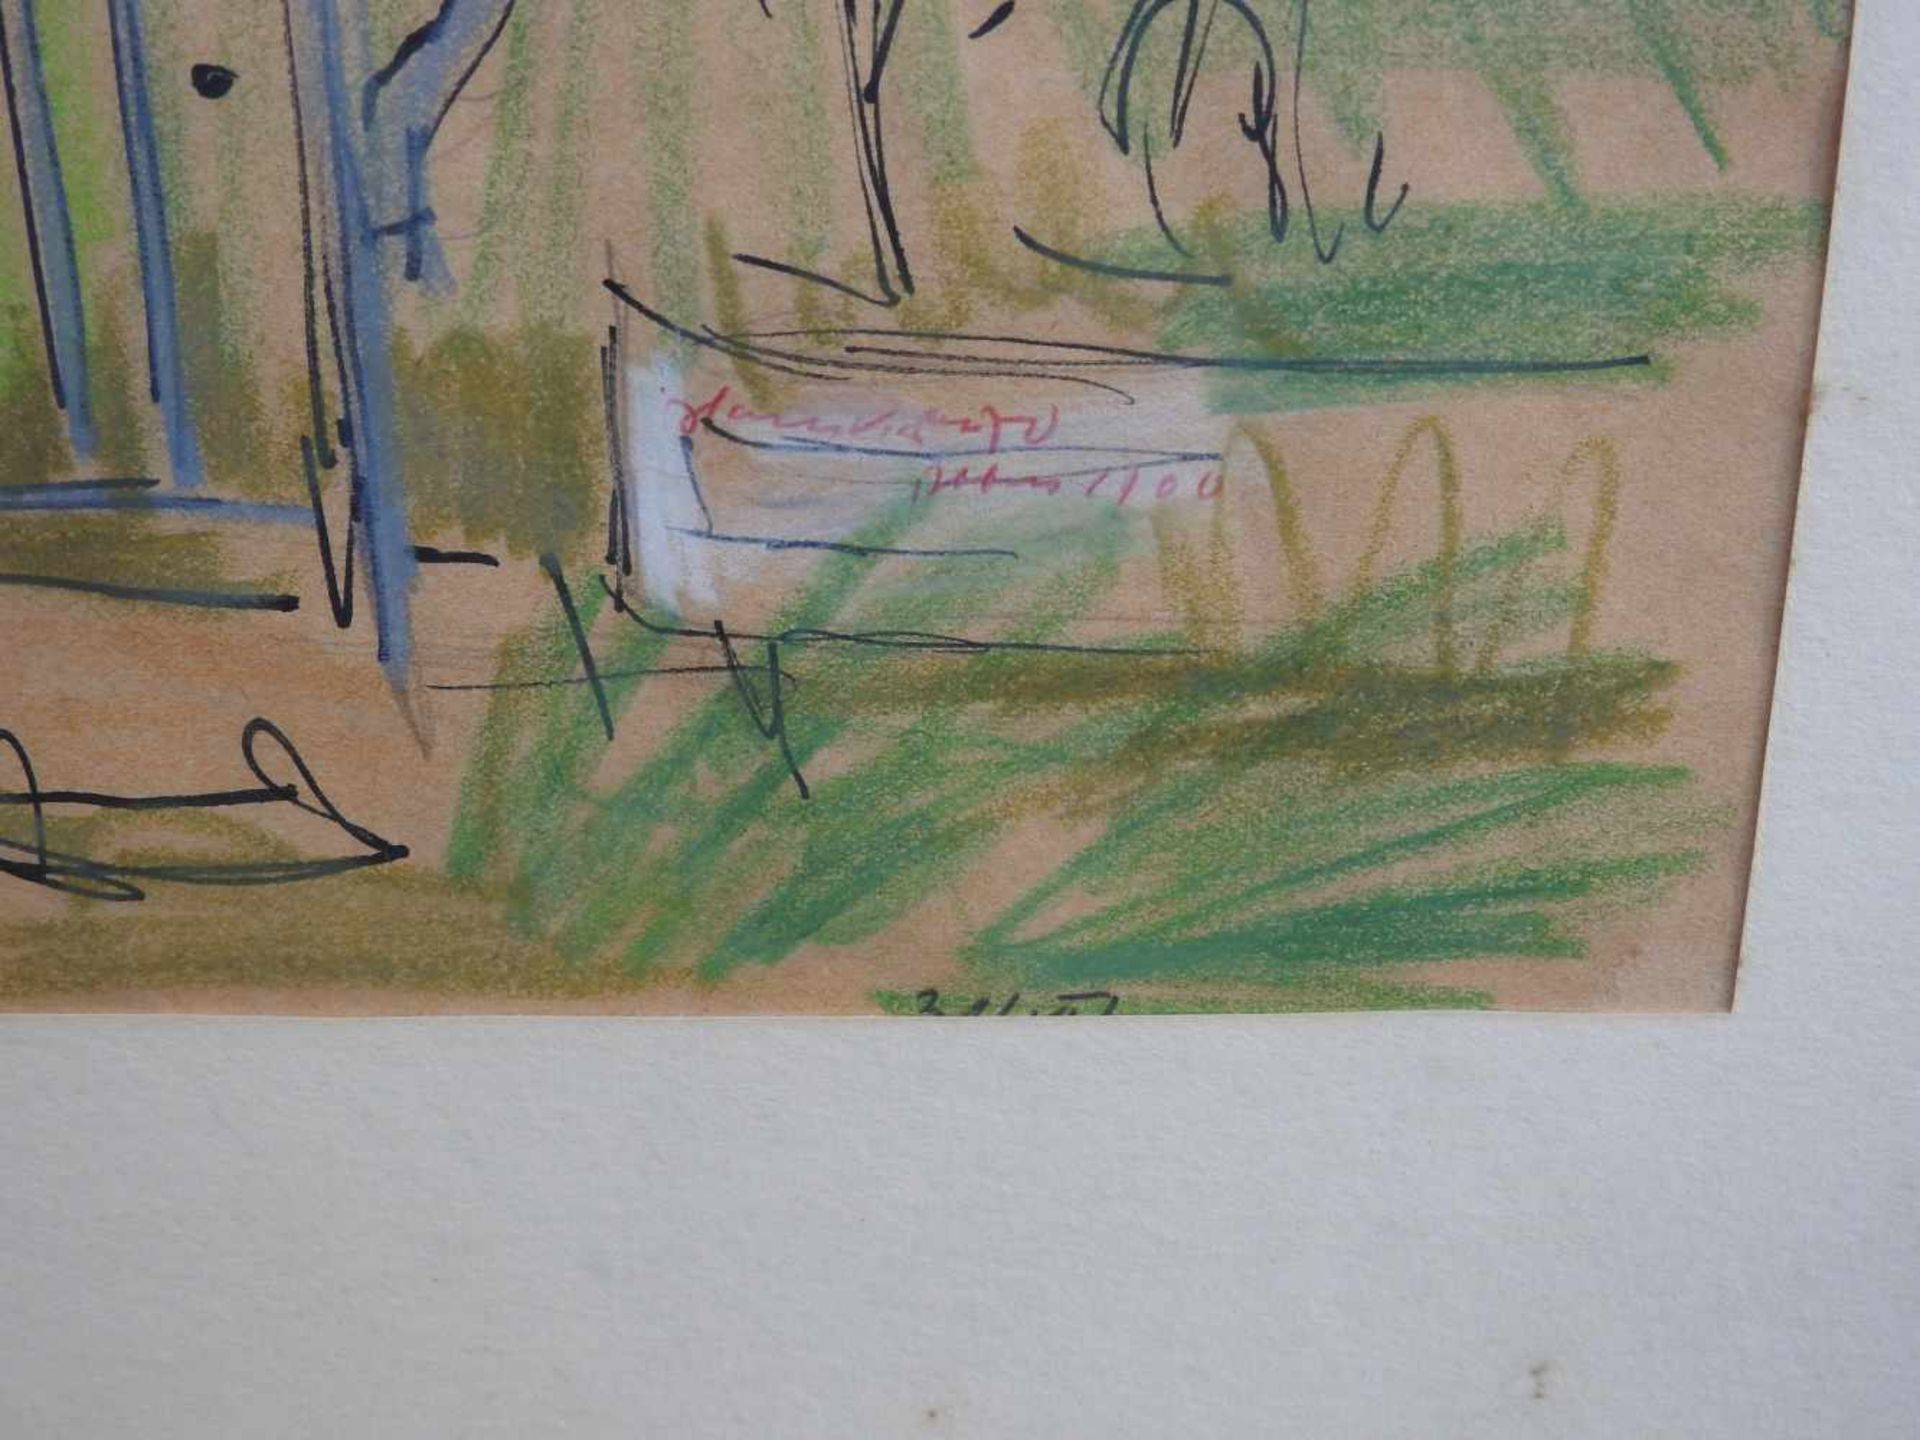 Blick auf eine LandstraßeBleistiftzeichnung auf Papier, die Grundzeichnung mit Tinte. - Image 3 of 3